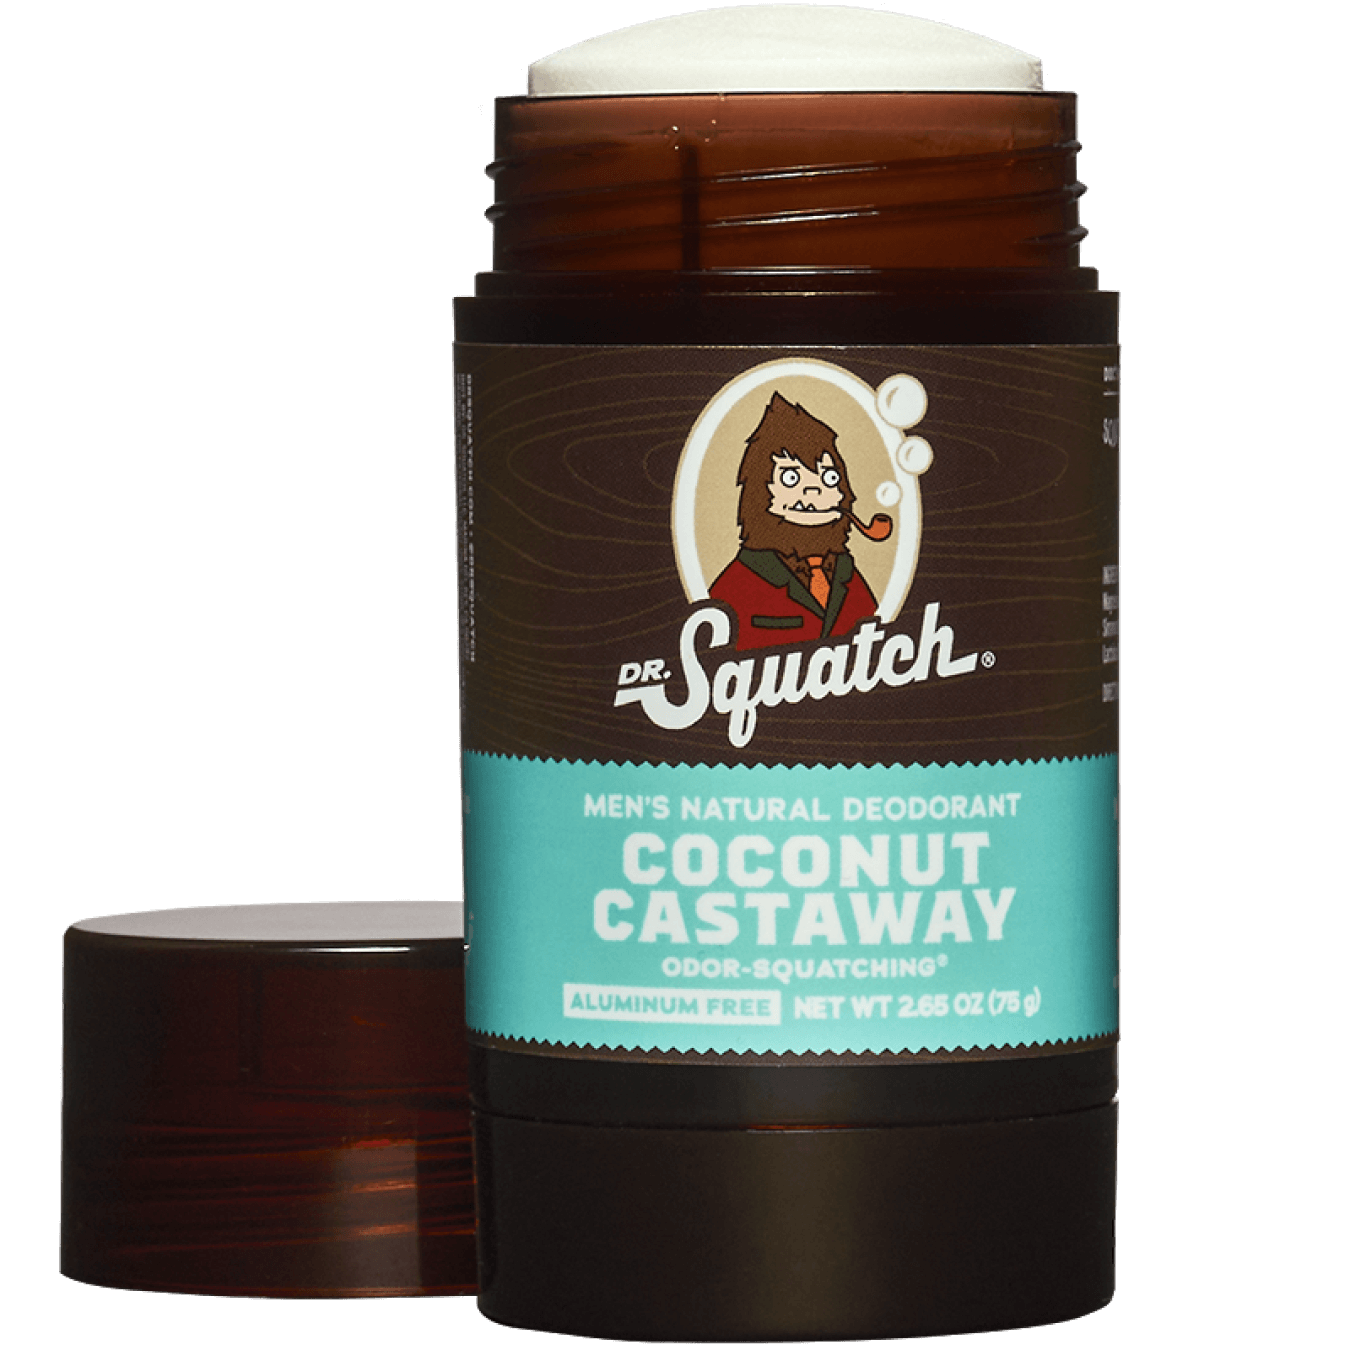 Coconut Castaway Deodorant - 6 units